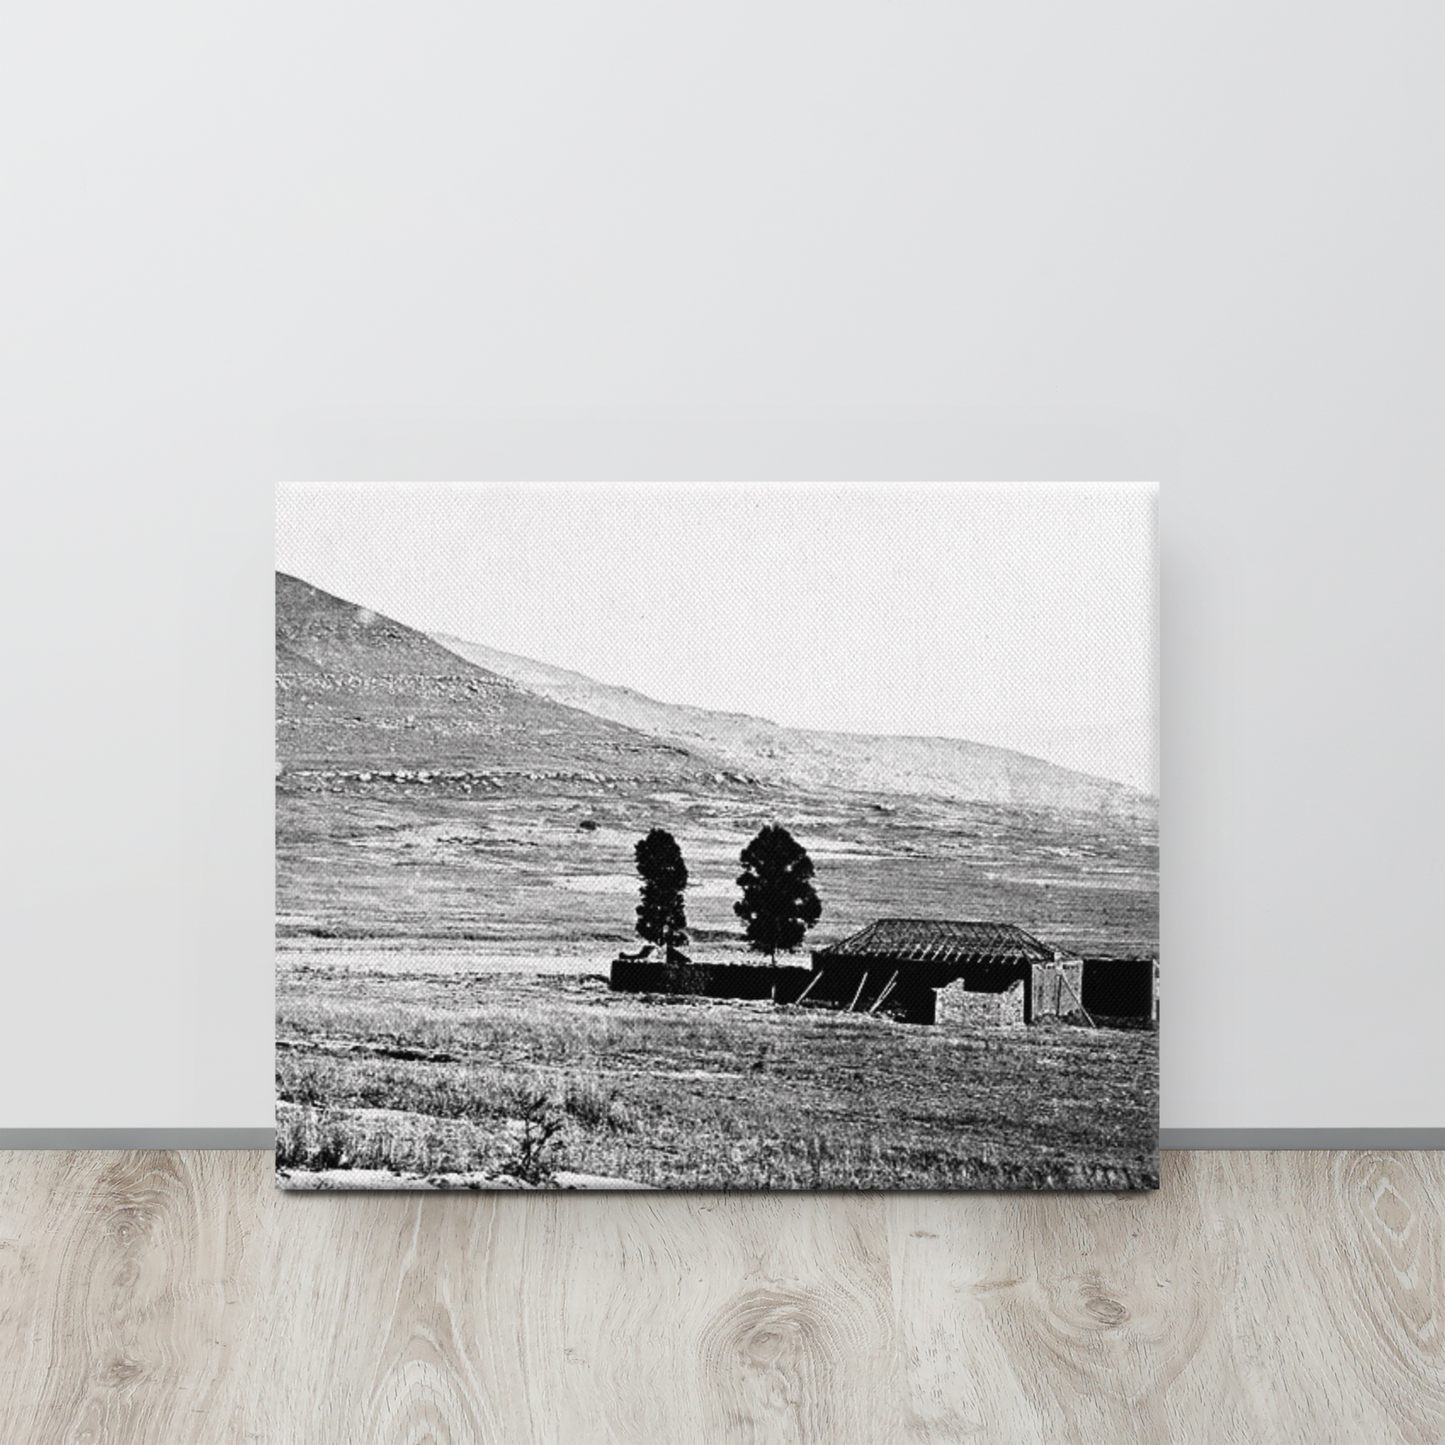 John Chard's Rorke's Drift Photograph (Canvas)